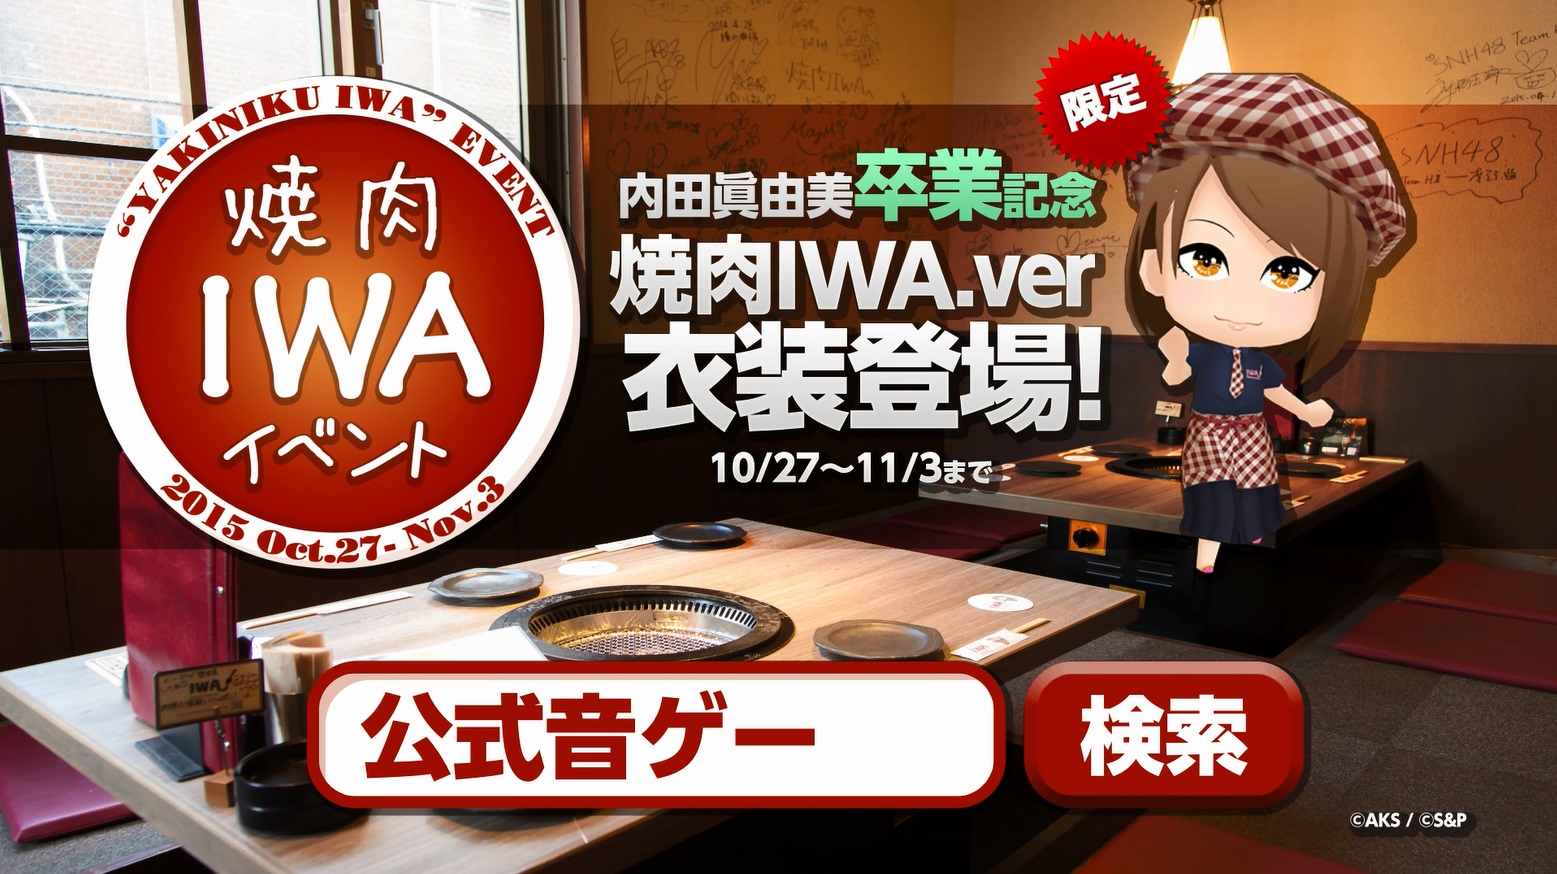 S P Akb48 グループ ついに公式音ゲーでました と内田眞由美さんプロデュースの 焼肉iwa とコラボ開始 卒業メッセージを盛り込んだインタビュー動画も Social Game Info